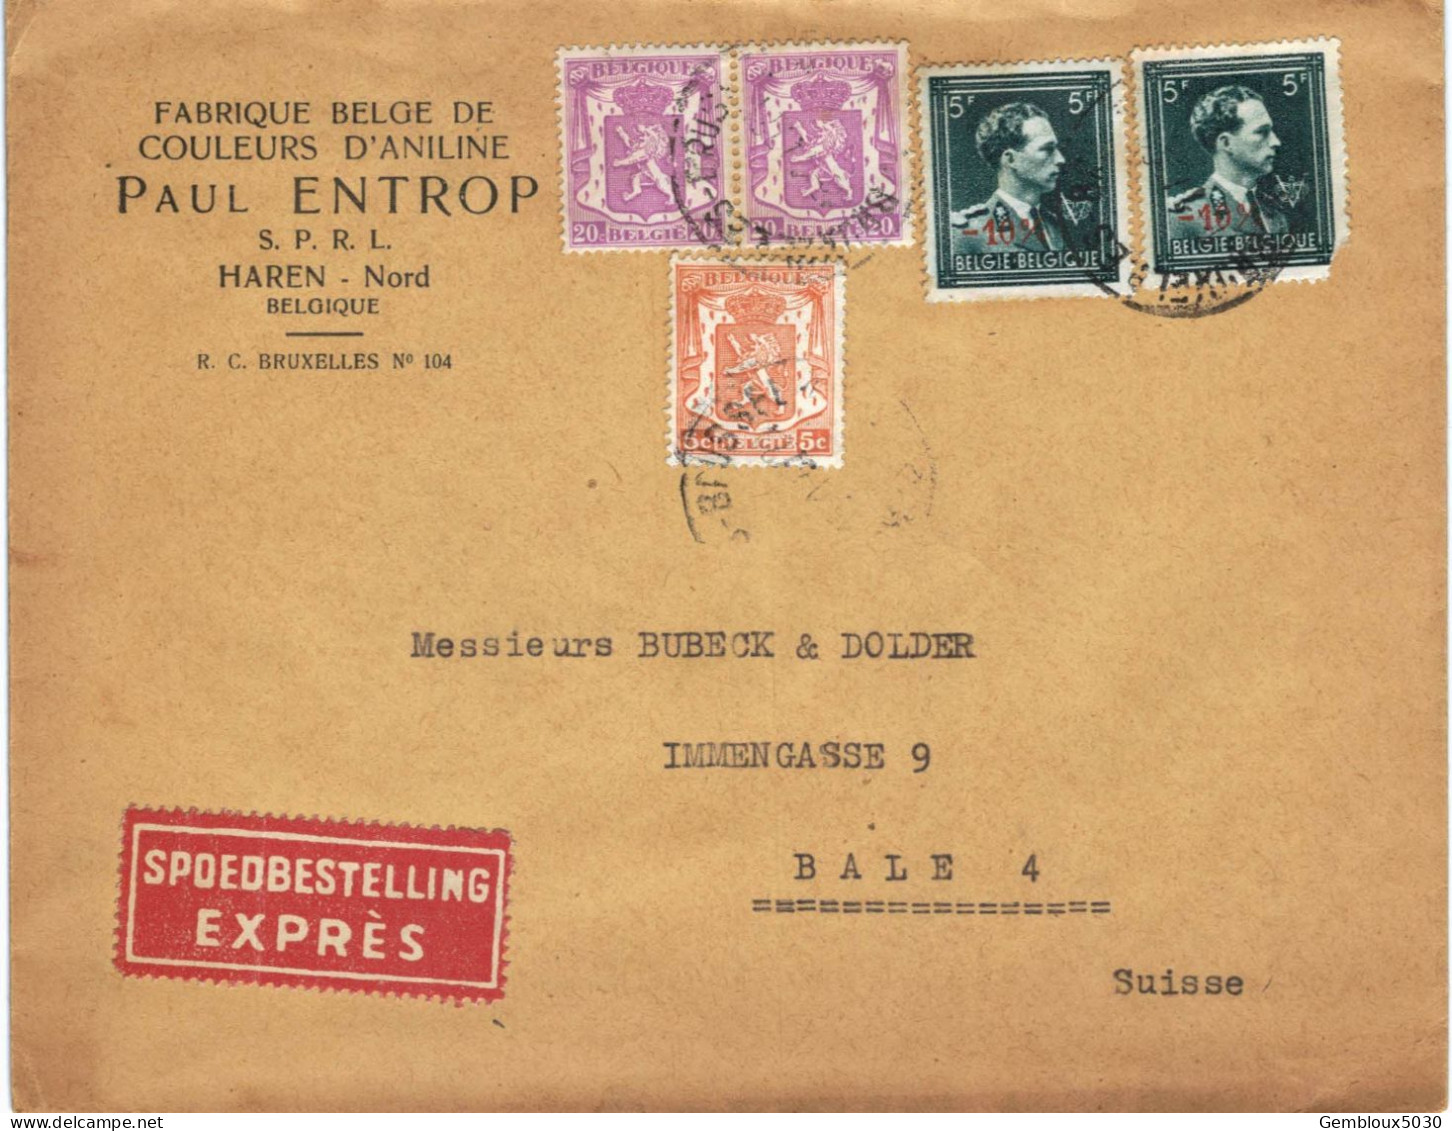 (01) Belgique 1 X N° 419 + 2 X 422 + 2 X 696  Sur Enveloppe écrite De Bruxelles Vers Bâle Suisse En Express - 1935-1949 Small Seal Of The State